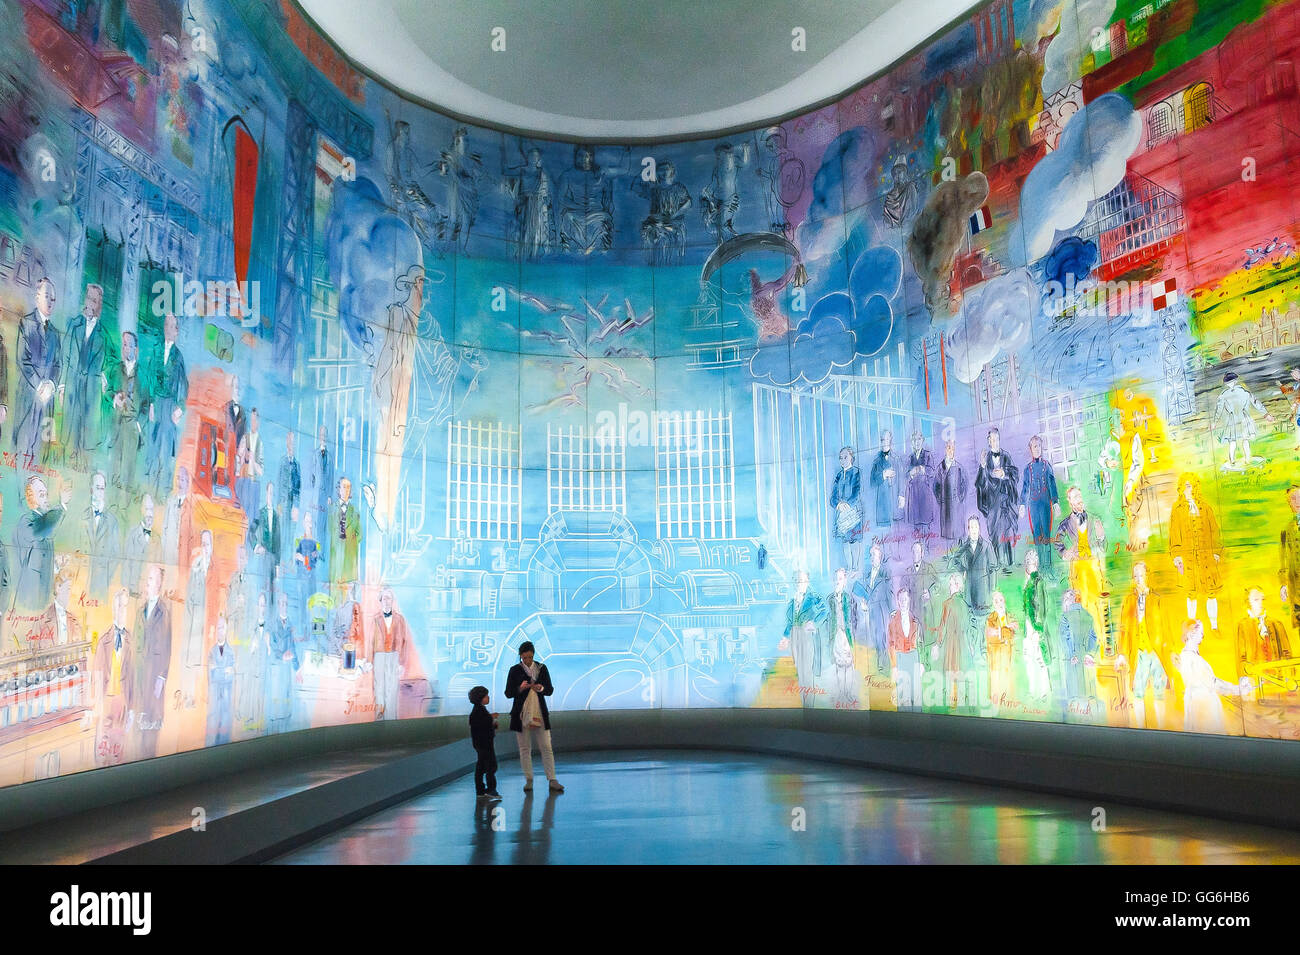 Musée d'art de Paris, vue sur une murale géante illuminée de la « Fee Electricite » de Raoul Duffy, Musée d'Art moderne de la ville de Paris (MAM), Paris. Banque D'Images